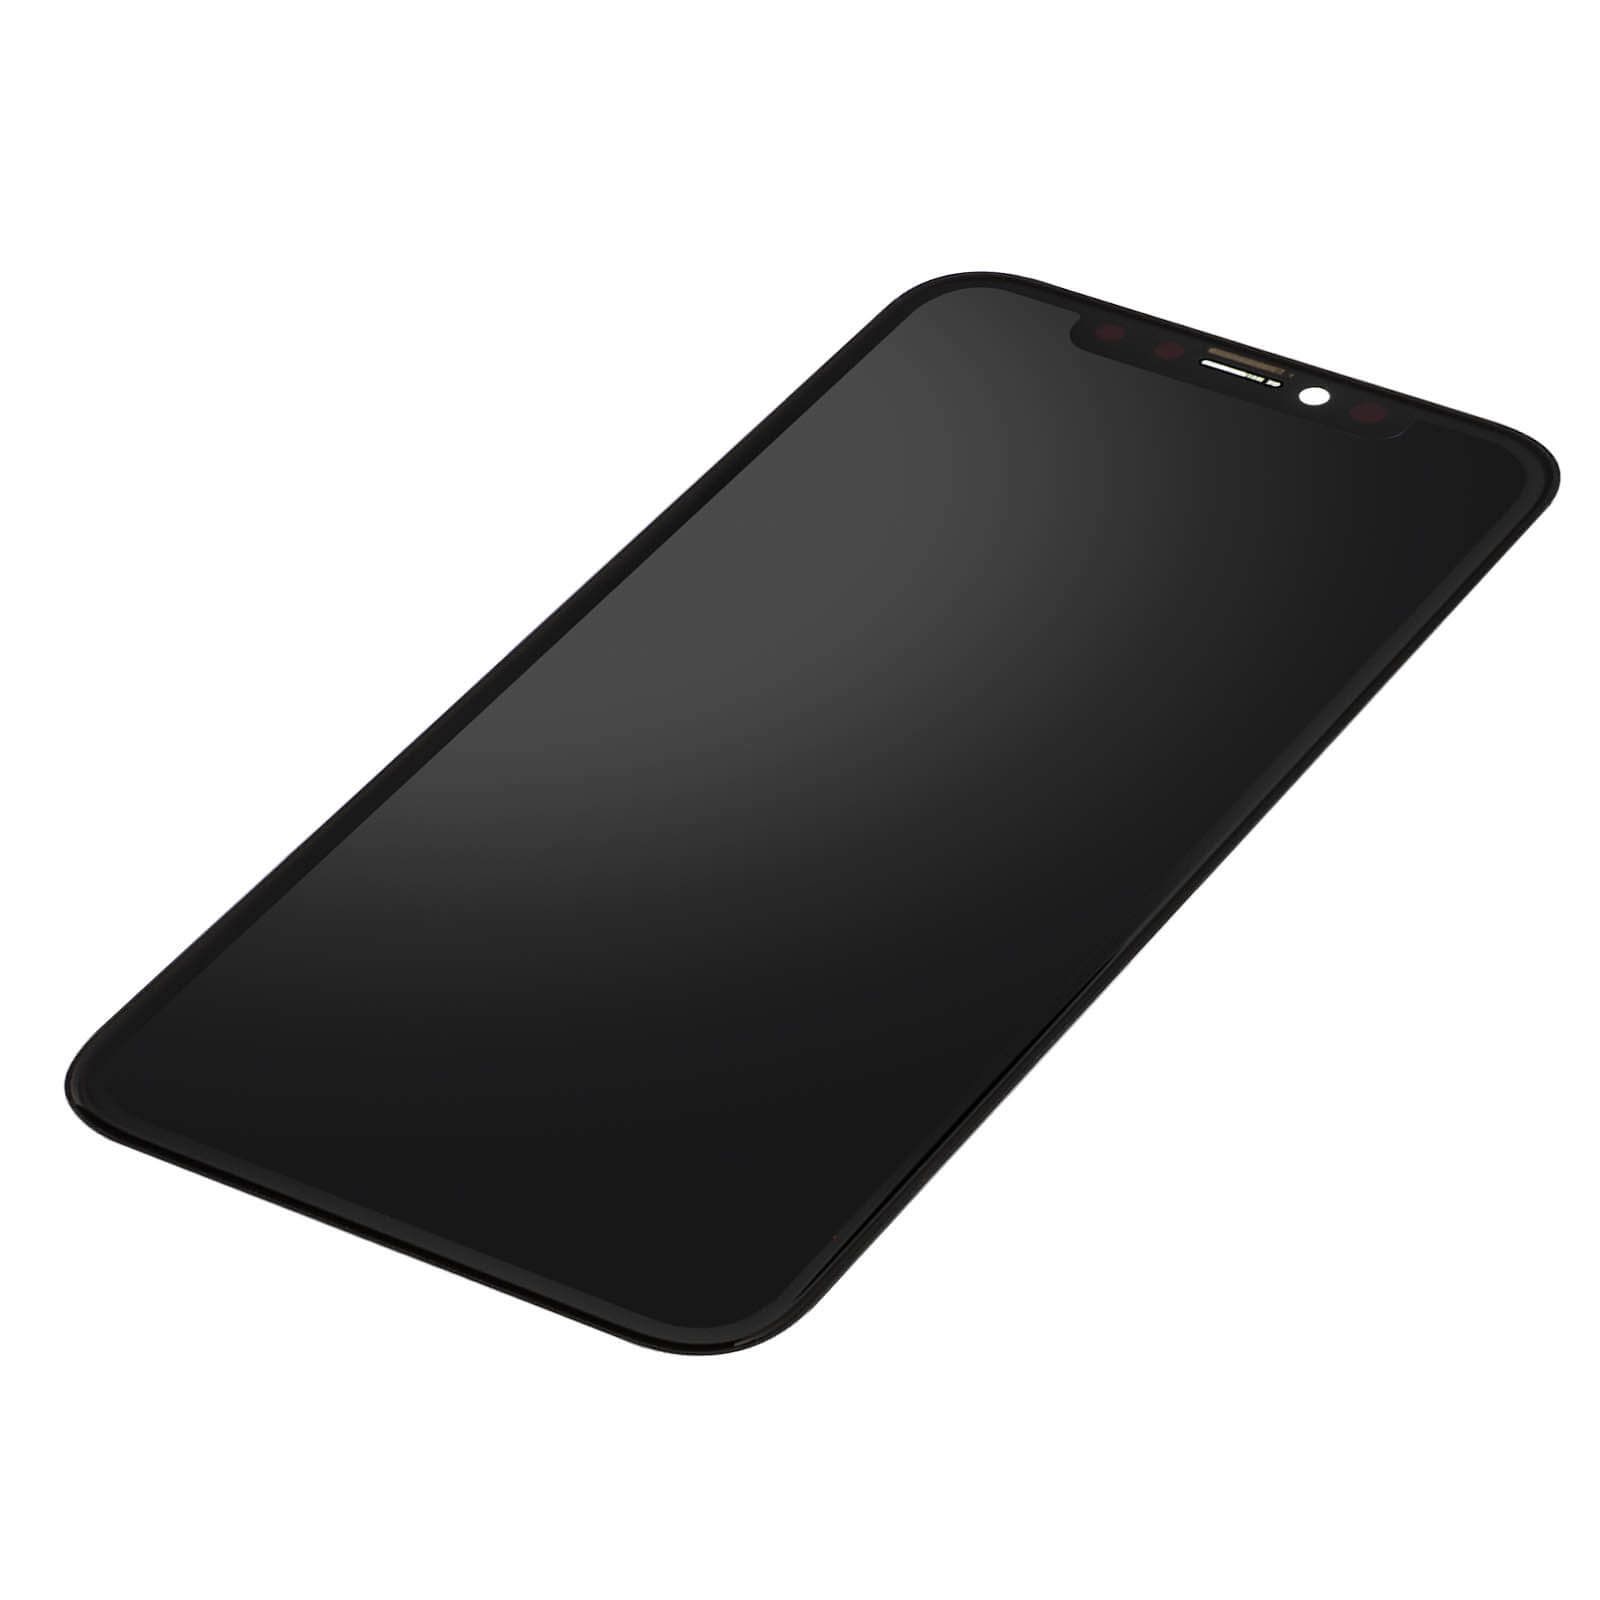 Ecran iPhone 11 Noir - Bloc LCD + vitre tactile